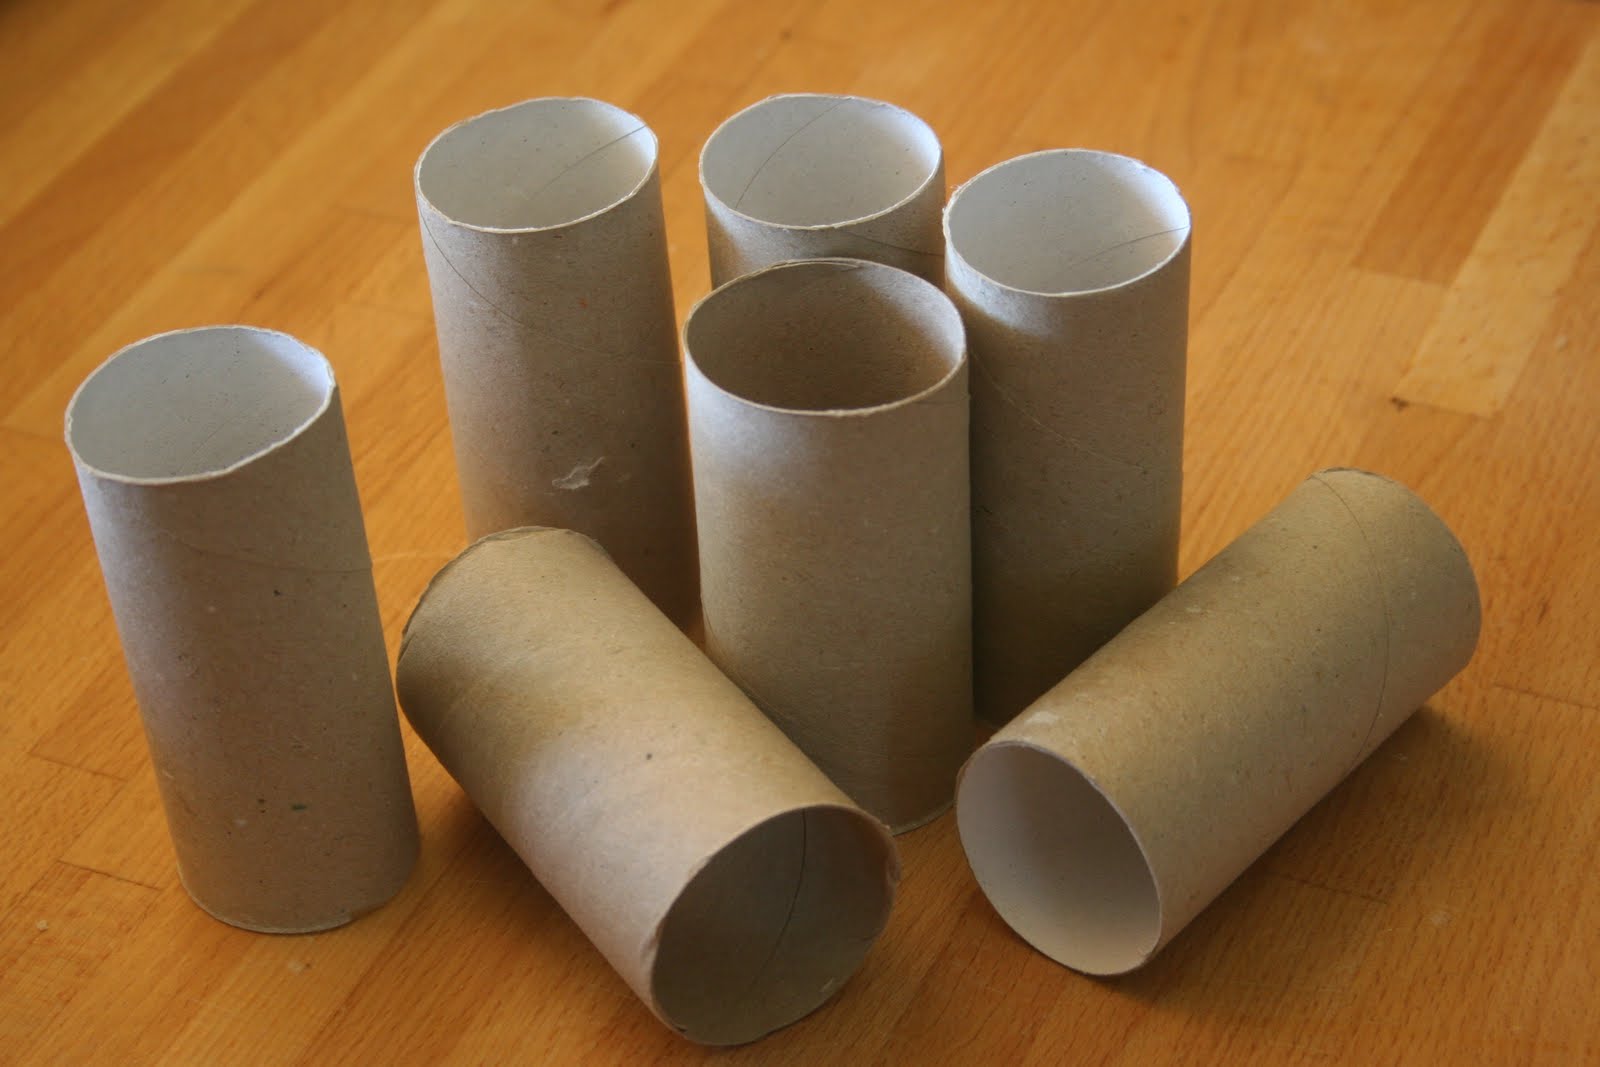 Carrinhos de corrida com tubos reciclados de papel higiênico